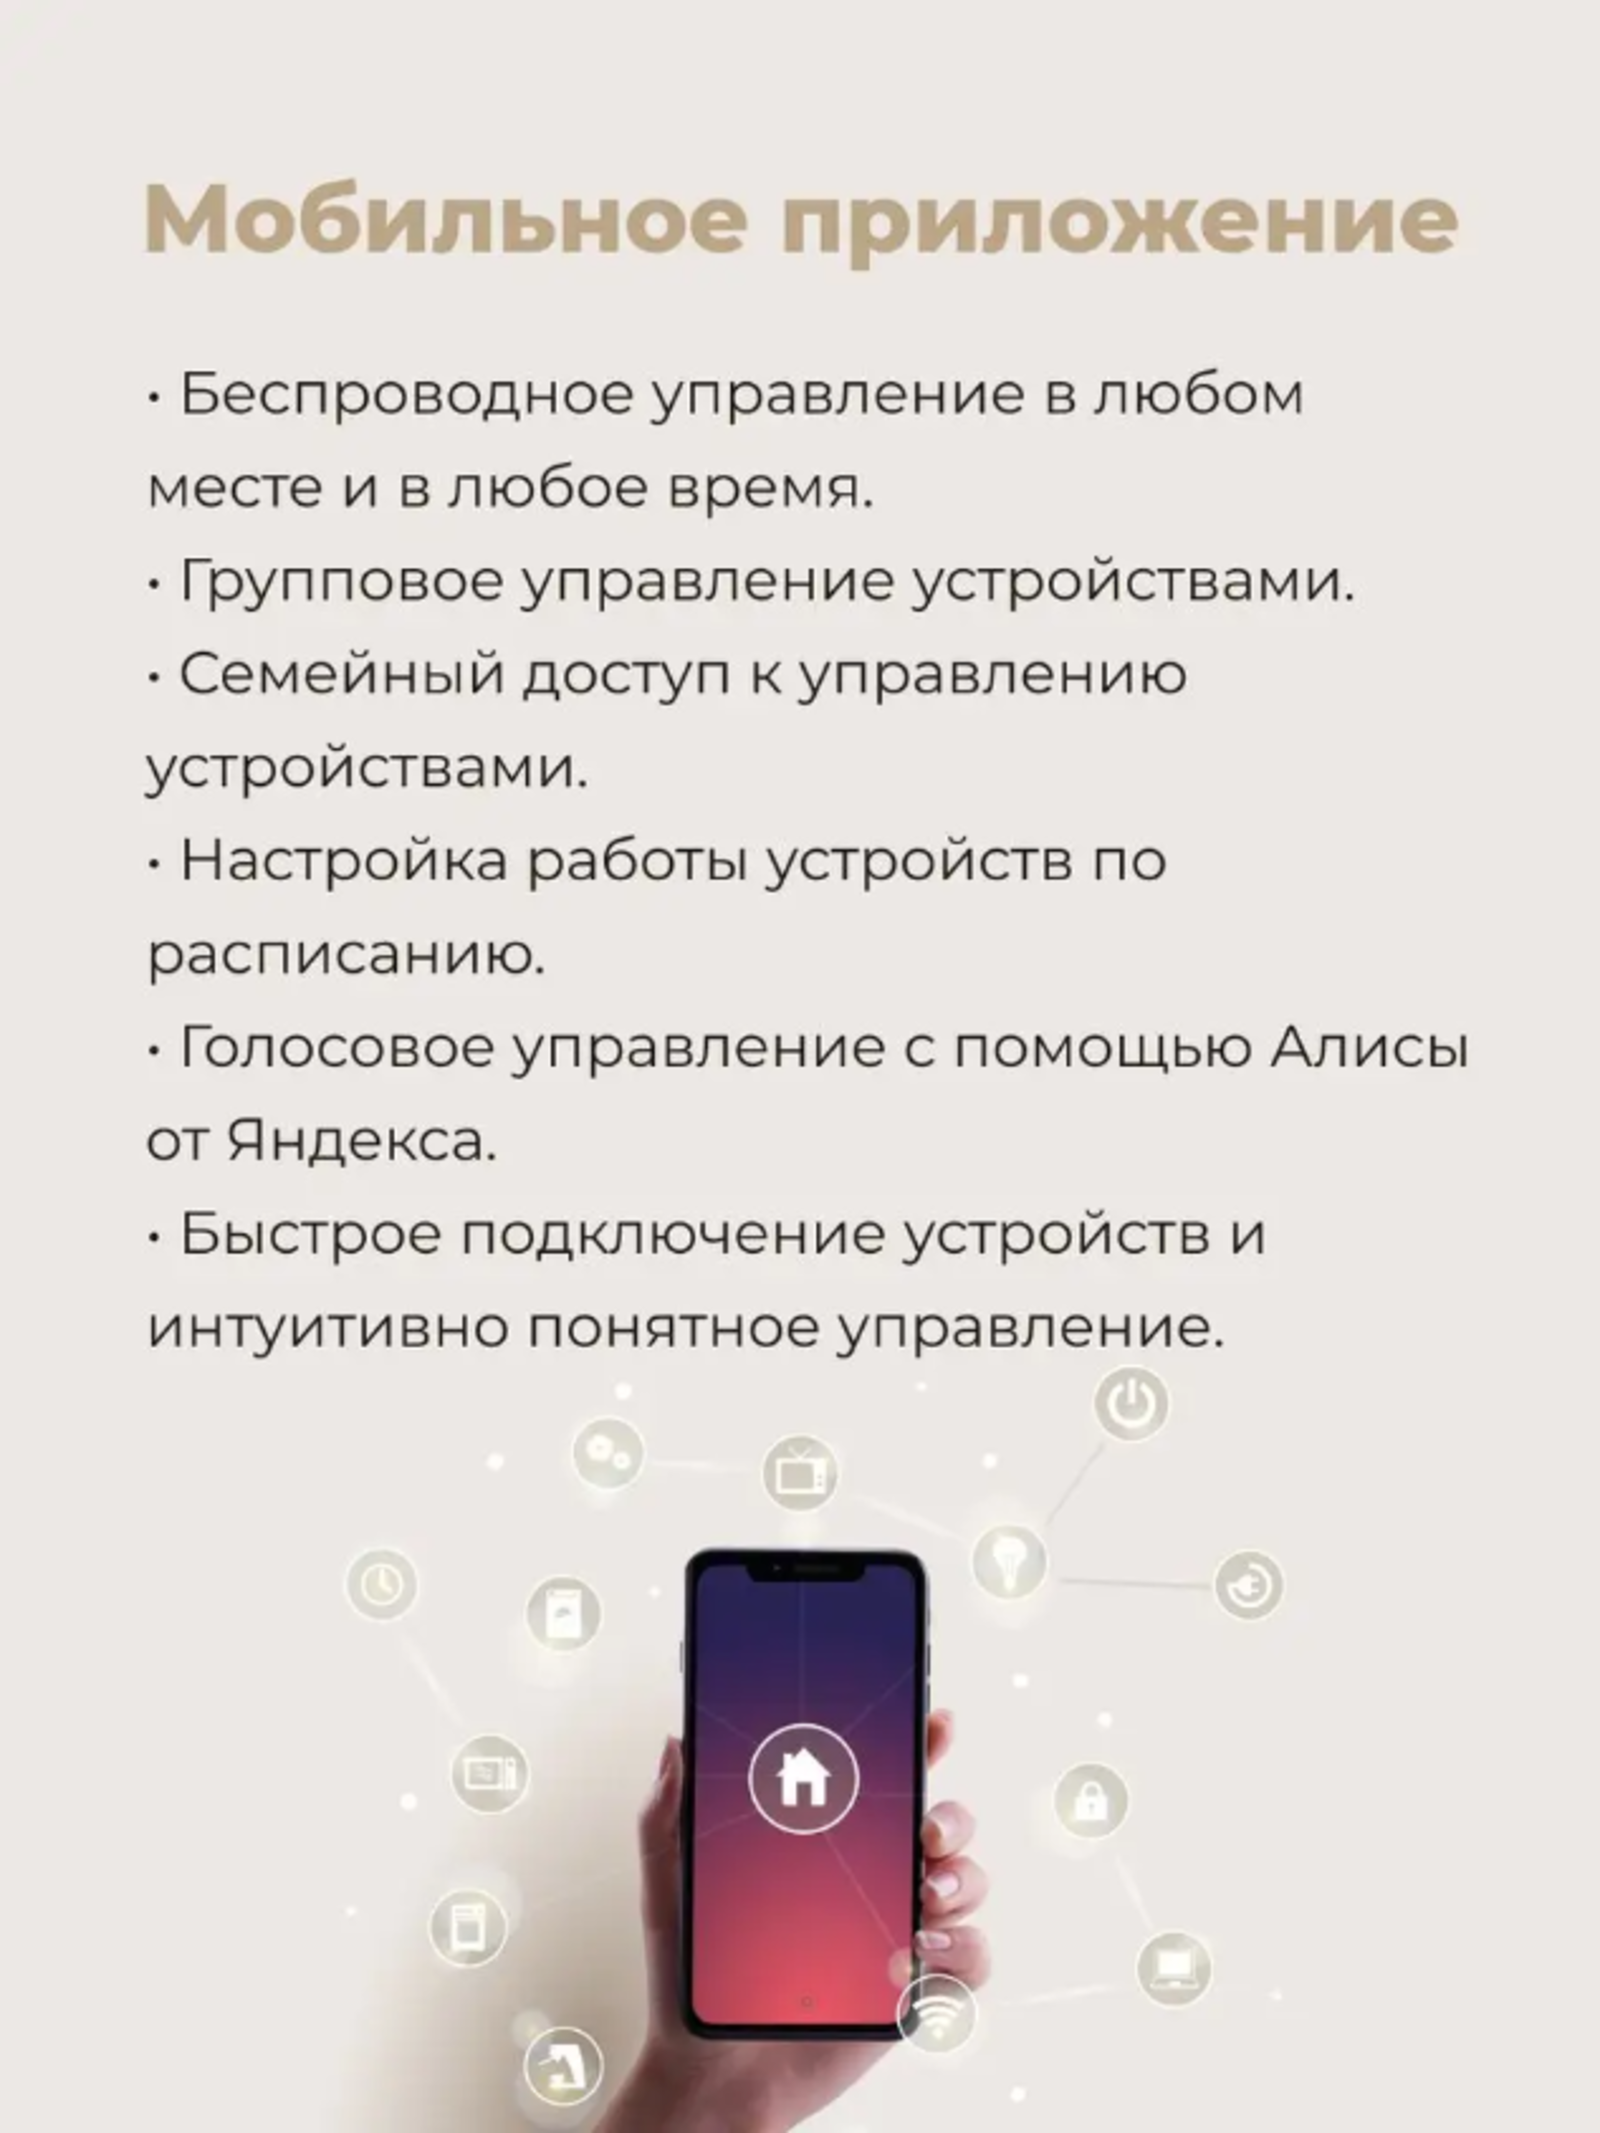 Специально разработано мобильное приложение для работы с устройством.